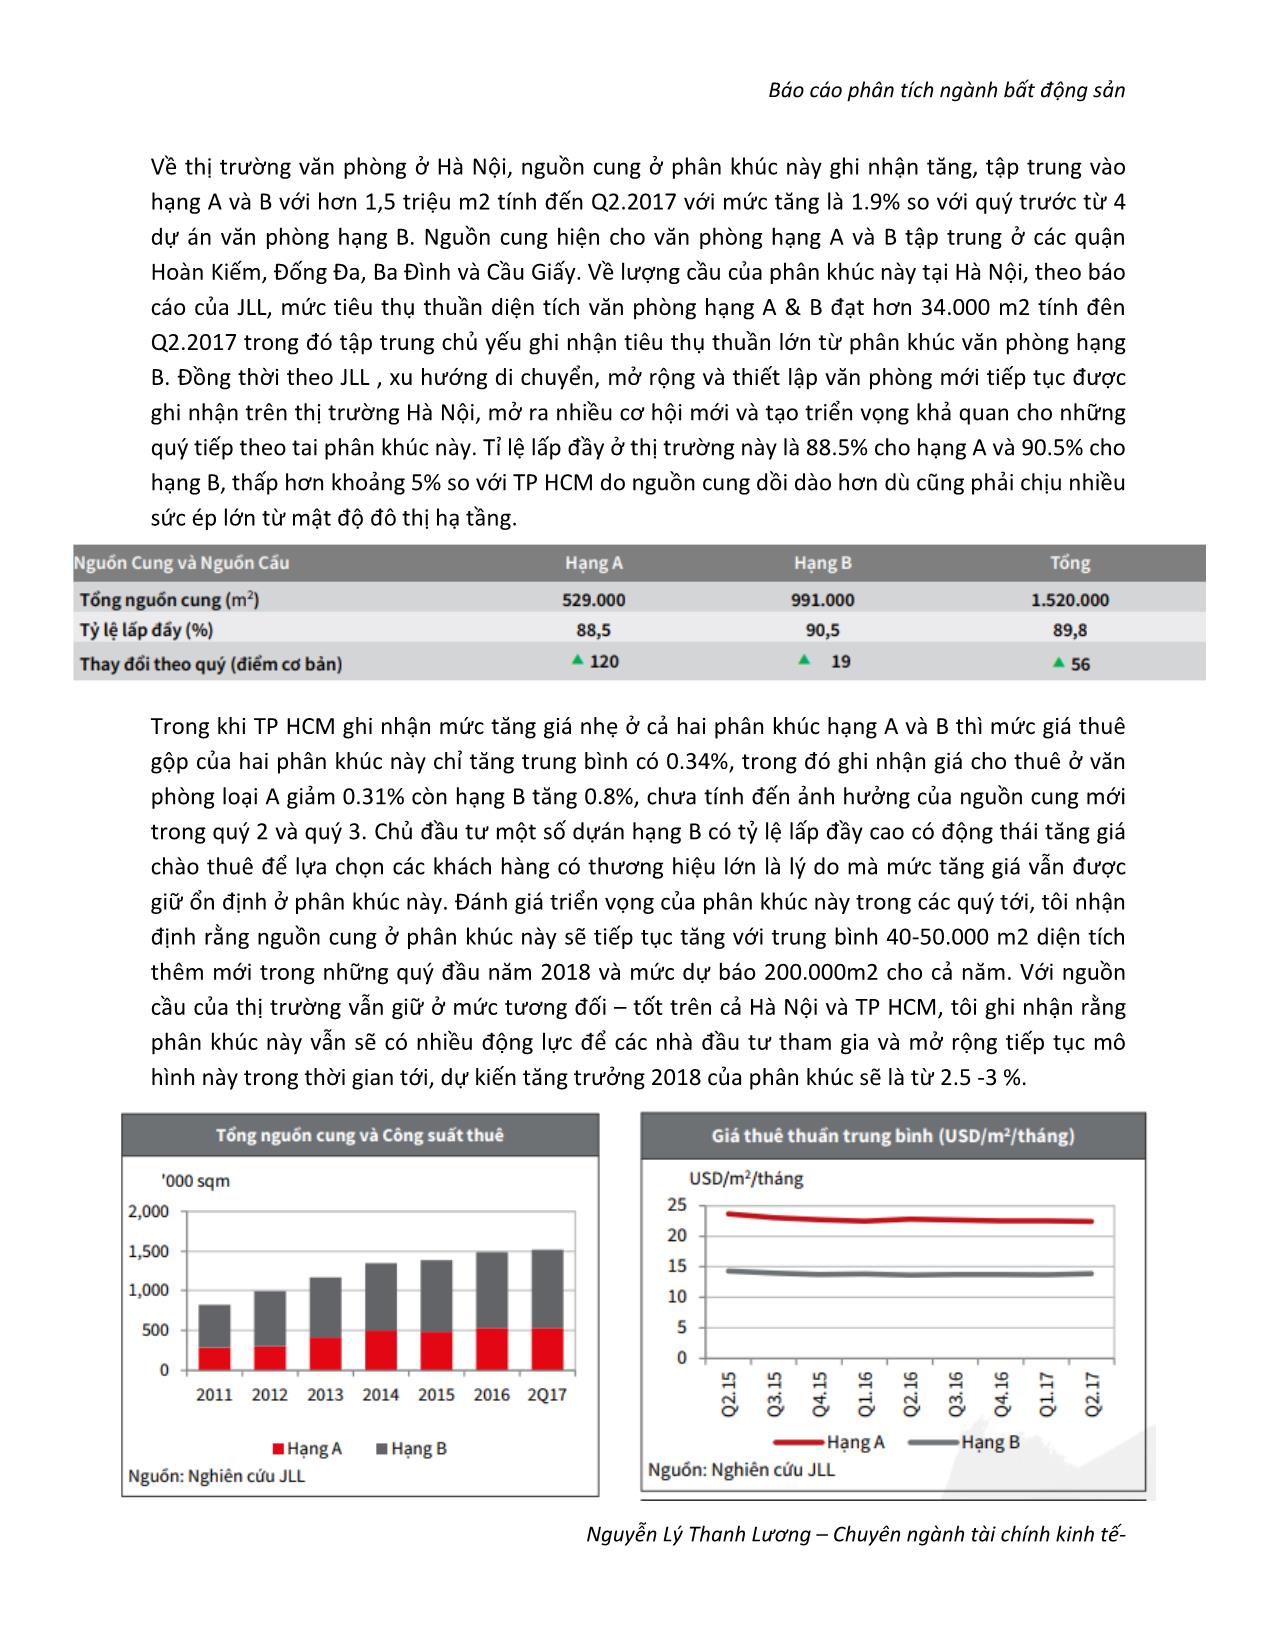 Báo cáo phân tích ngành bất động sản - Nguyễn Lý Thanh Lương trang 9